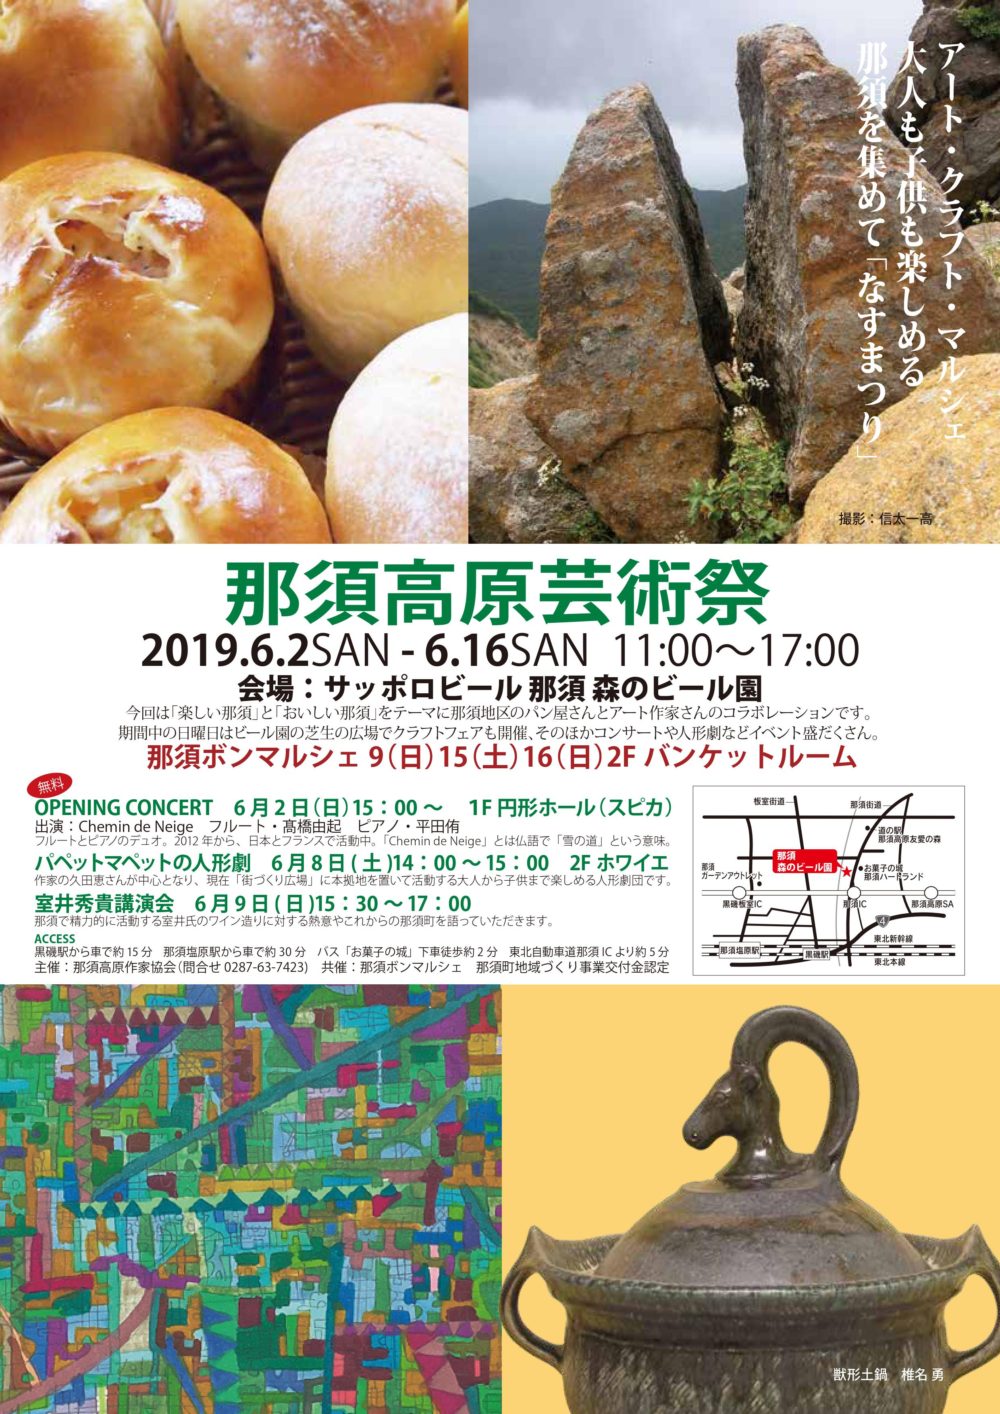 2019那須高原芸術祭のリーフレット表